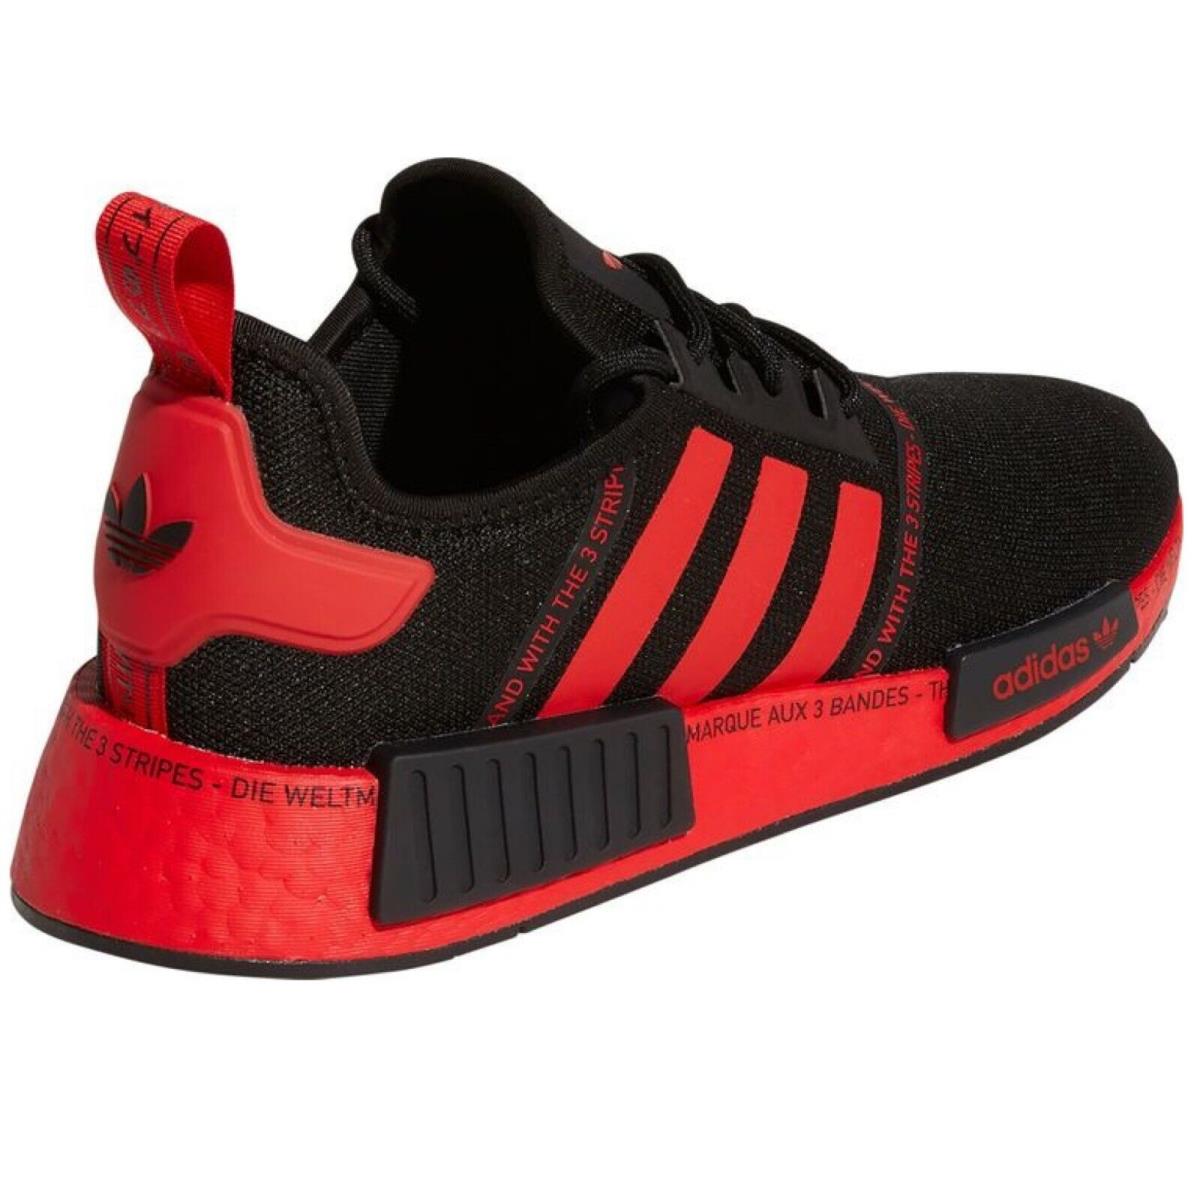 Adidas shoes Originals - Black , BLACK/RED/BLACK Manufacturer 3